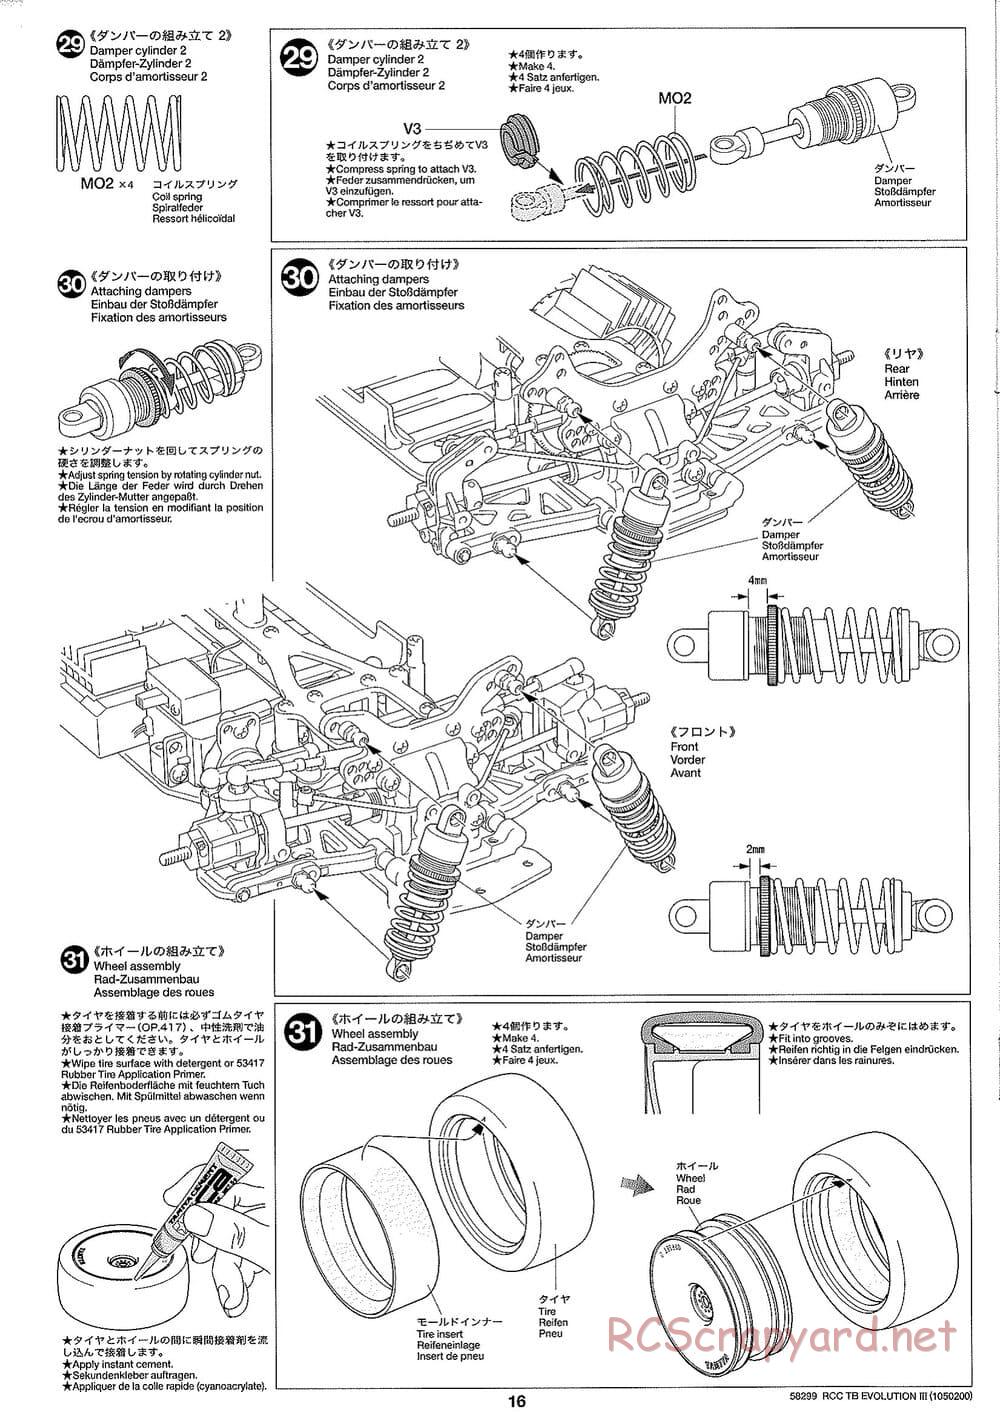 Tamiya - TB Evolution III Chassis - Manual - Page 17